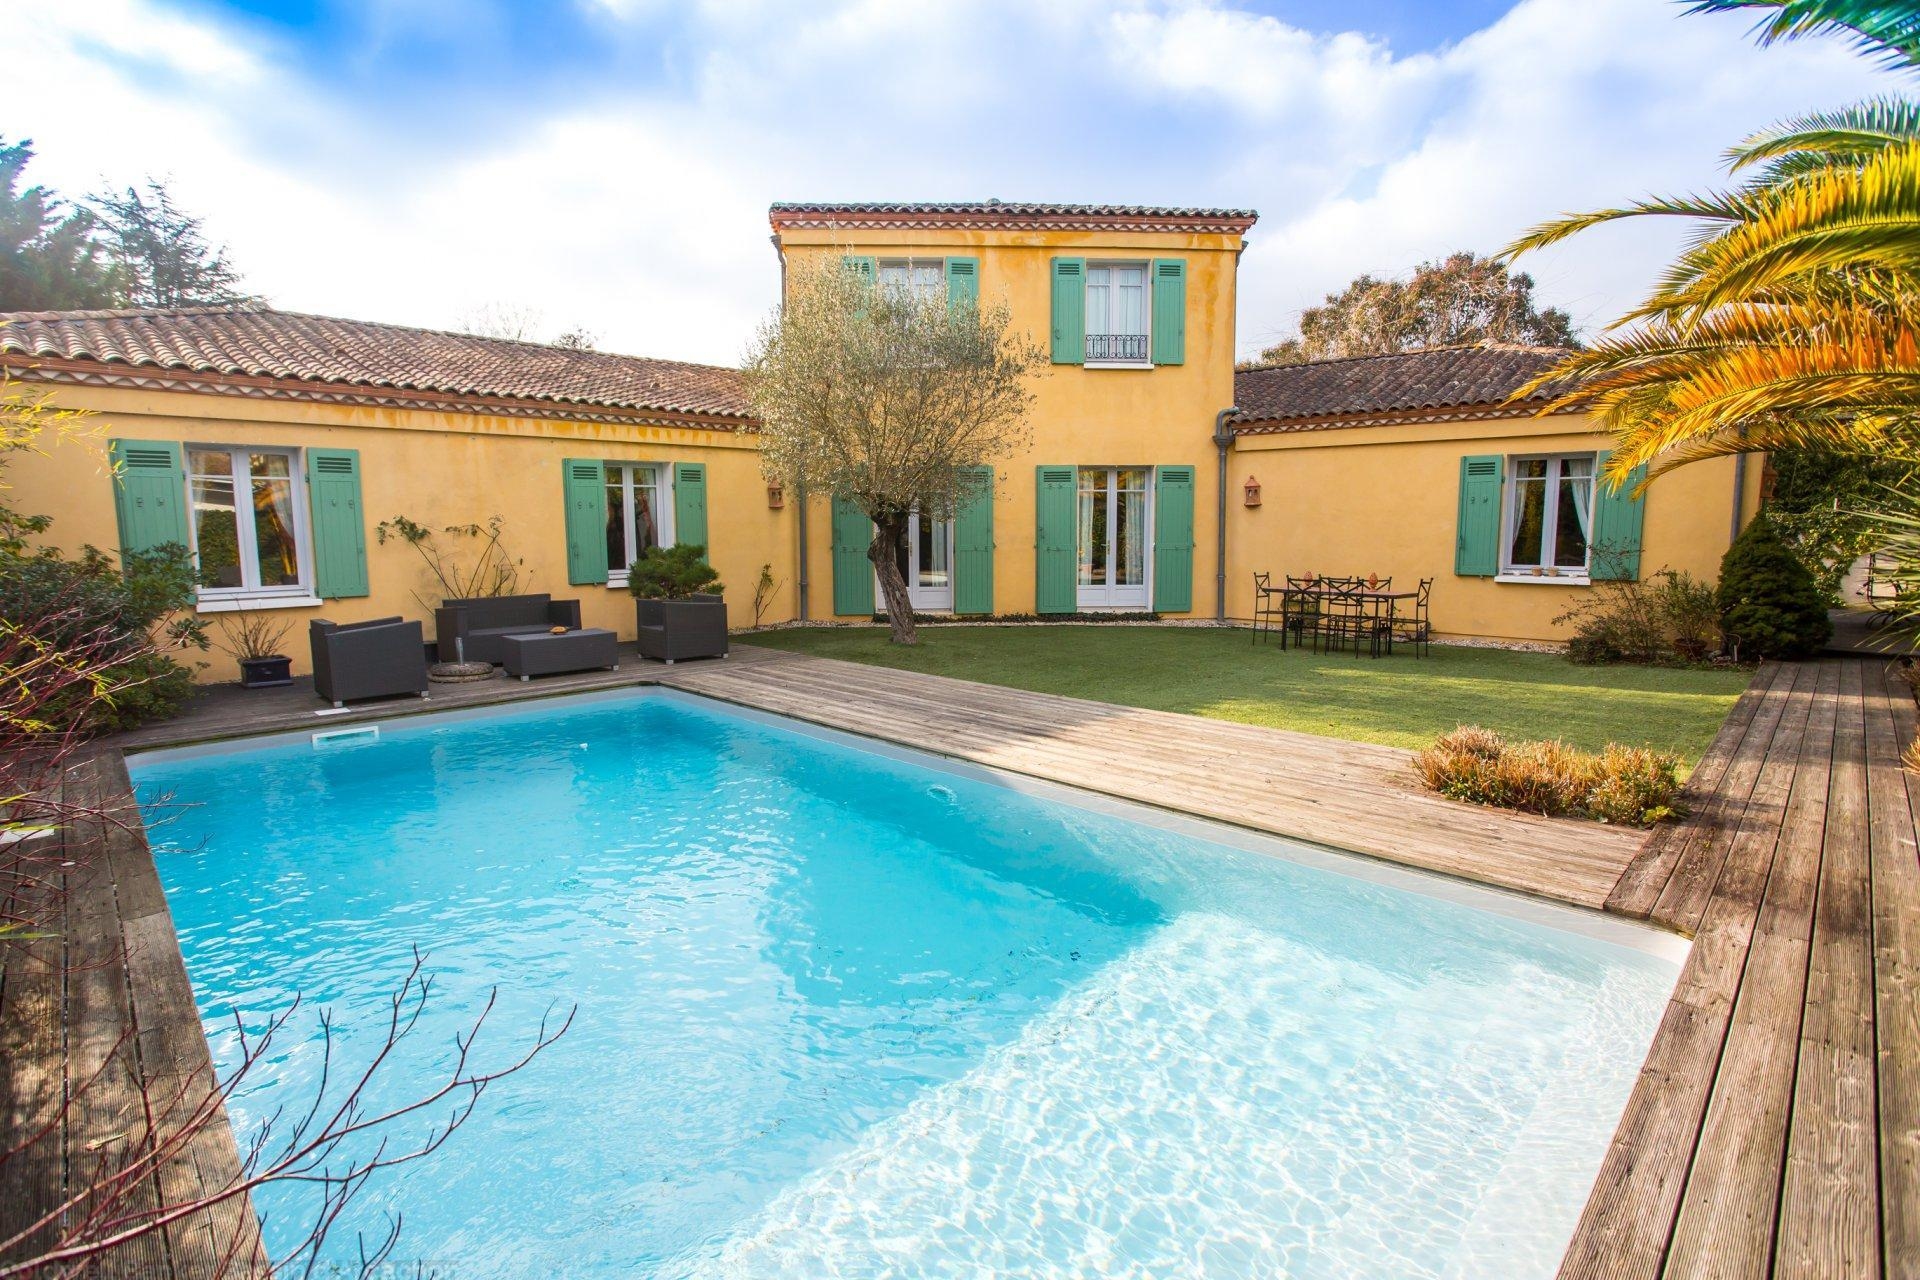 Belle villa à vendre à Bordeaux - Cauderan - 4 chambres - piscine - au calme